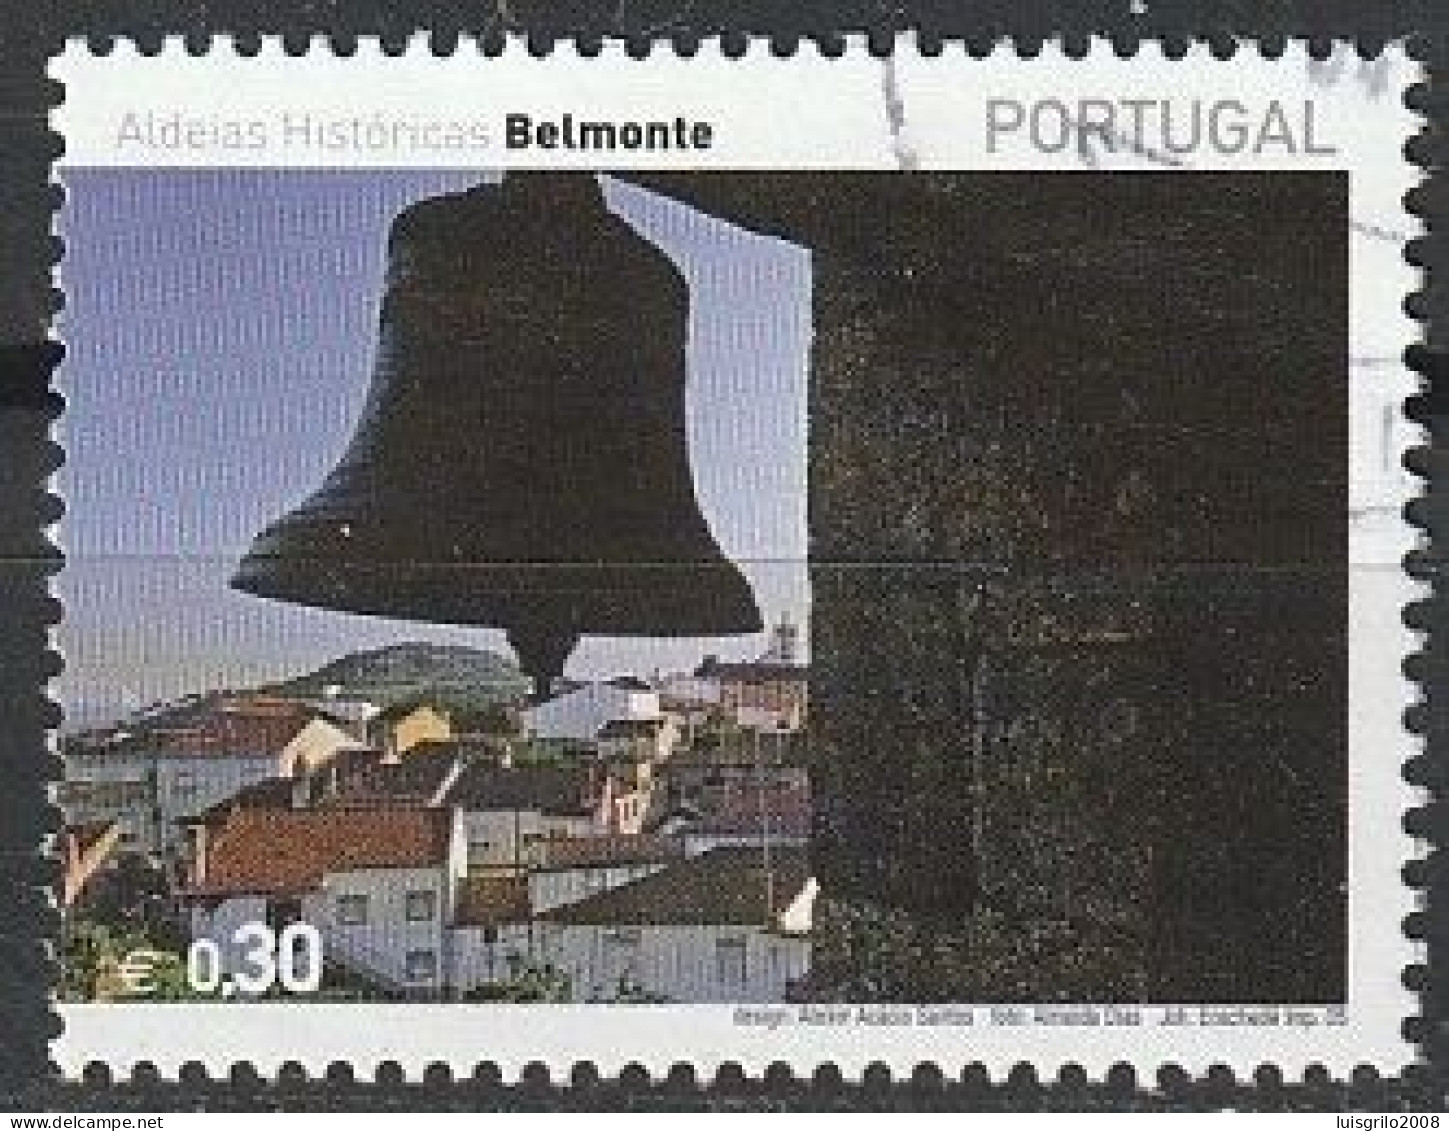 Portugal, 2005 - Aldeias Históricas, €0,30 -|- Mundifil - 3220 - Usado